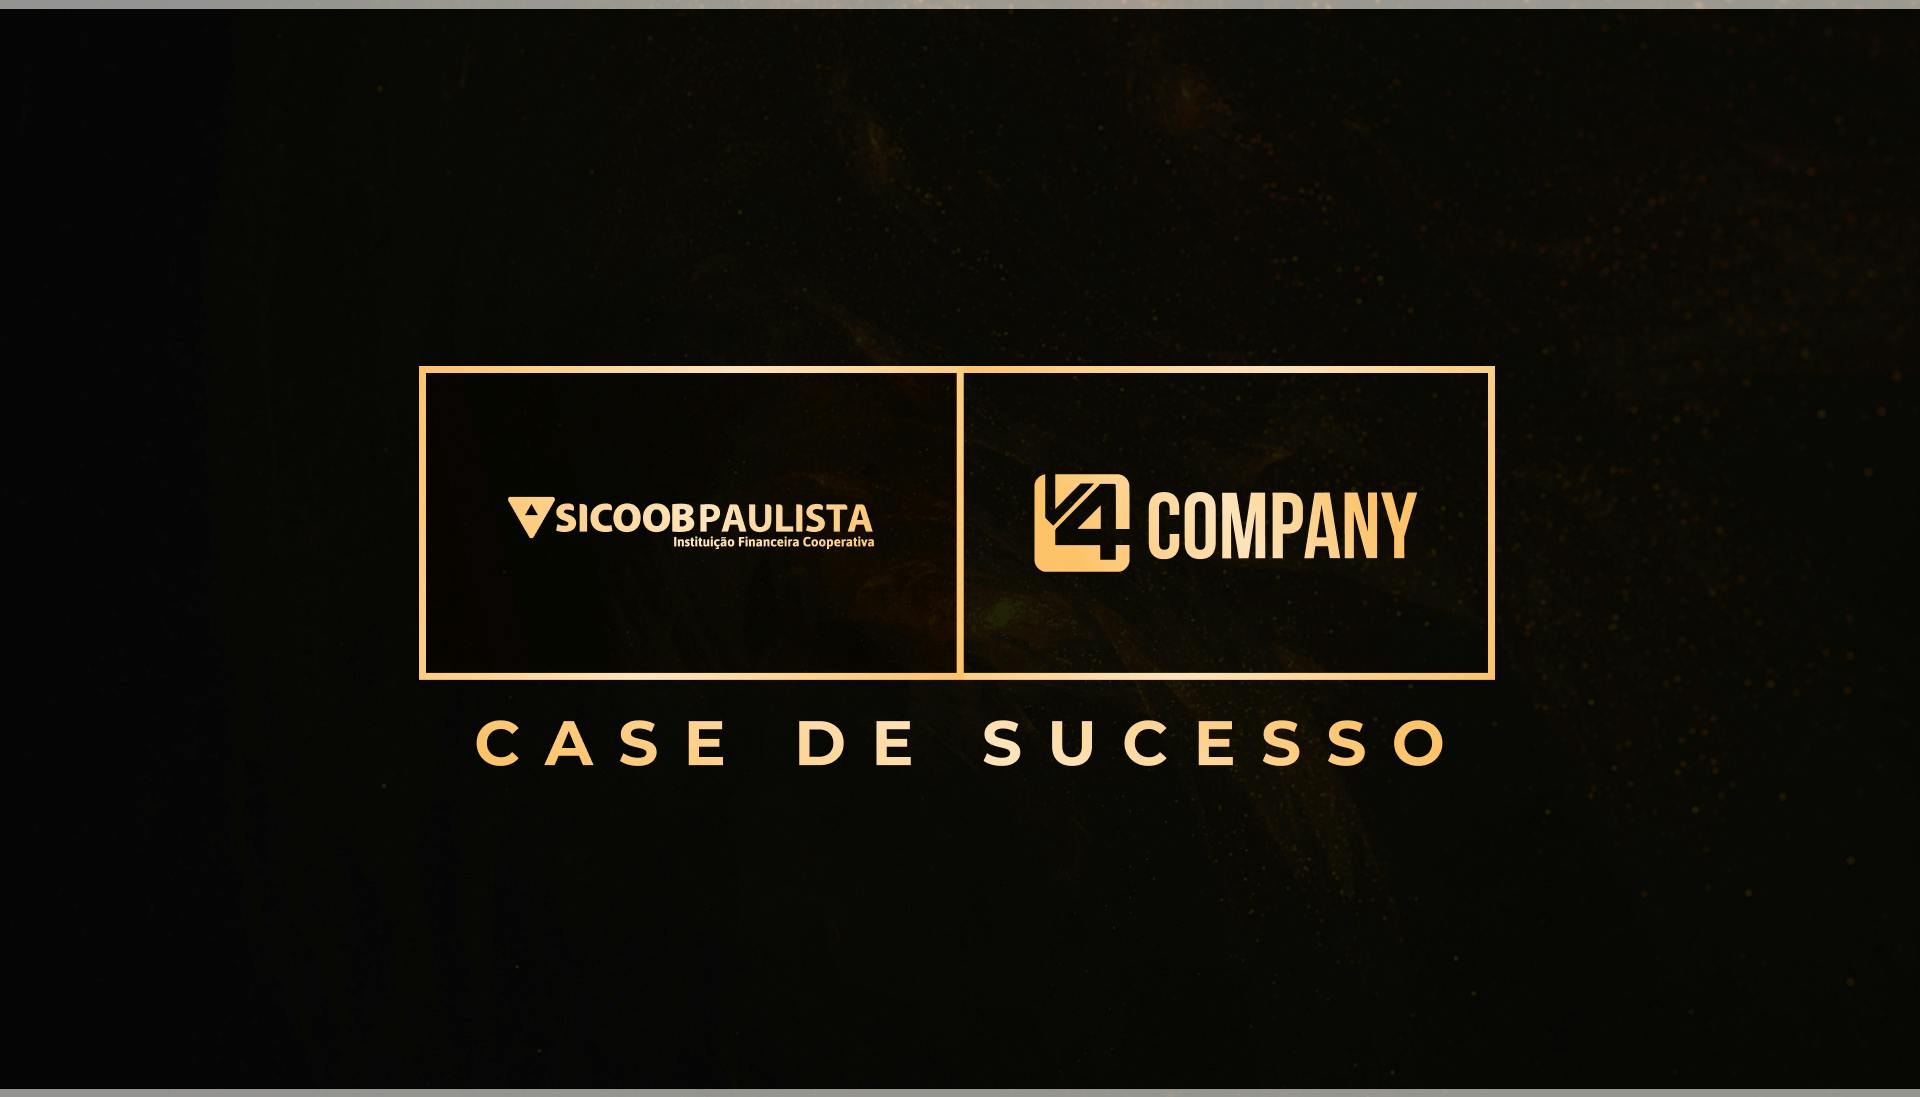 Sicoob Paulista destacando-se no digital com estratégias de marketing para produtos financeiros